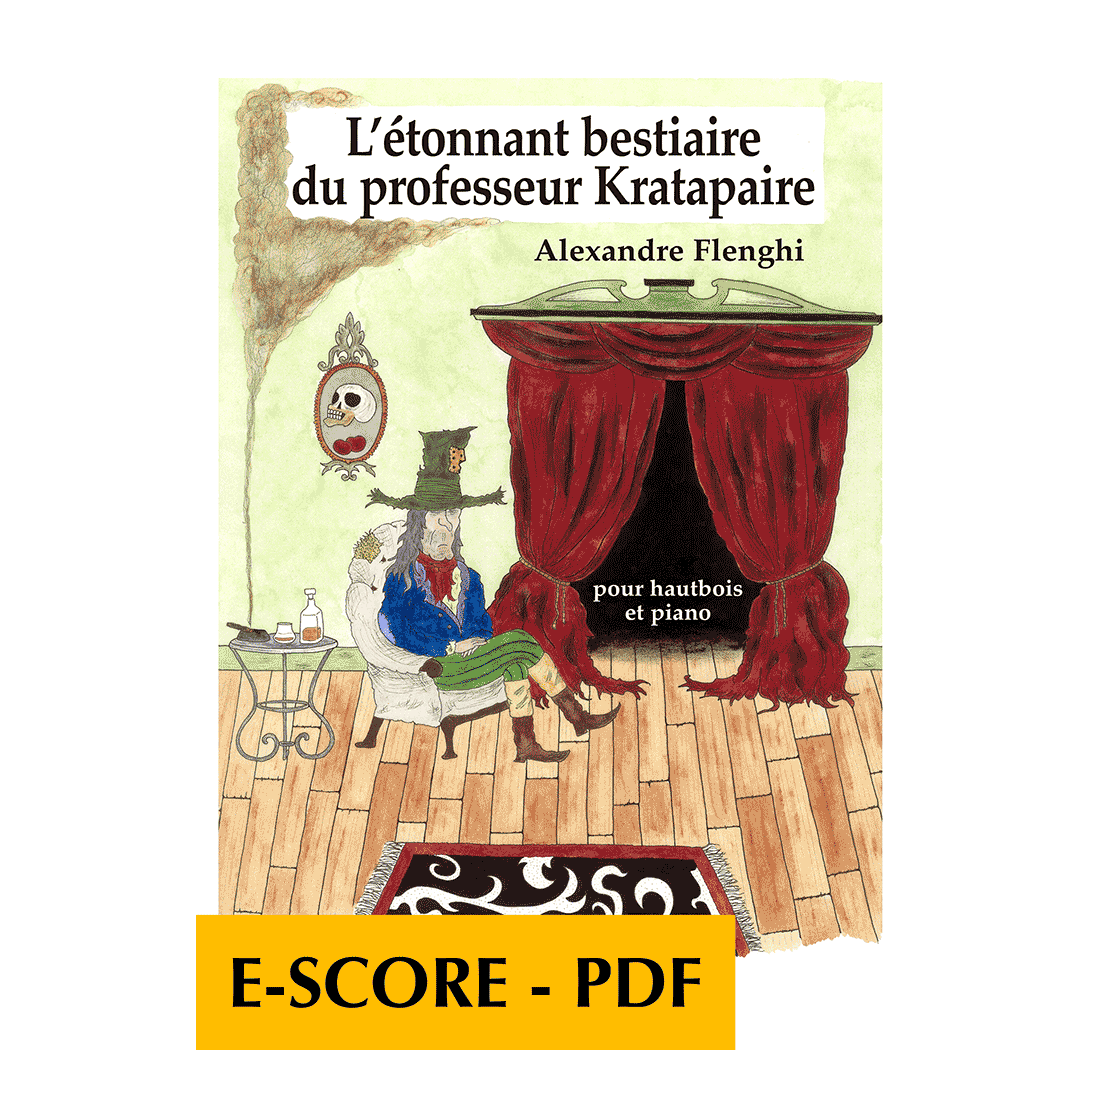 L'étonnant bestiaire du professeur Kratapaire pour hautbois et piano - E-score PDF